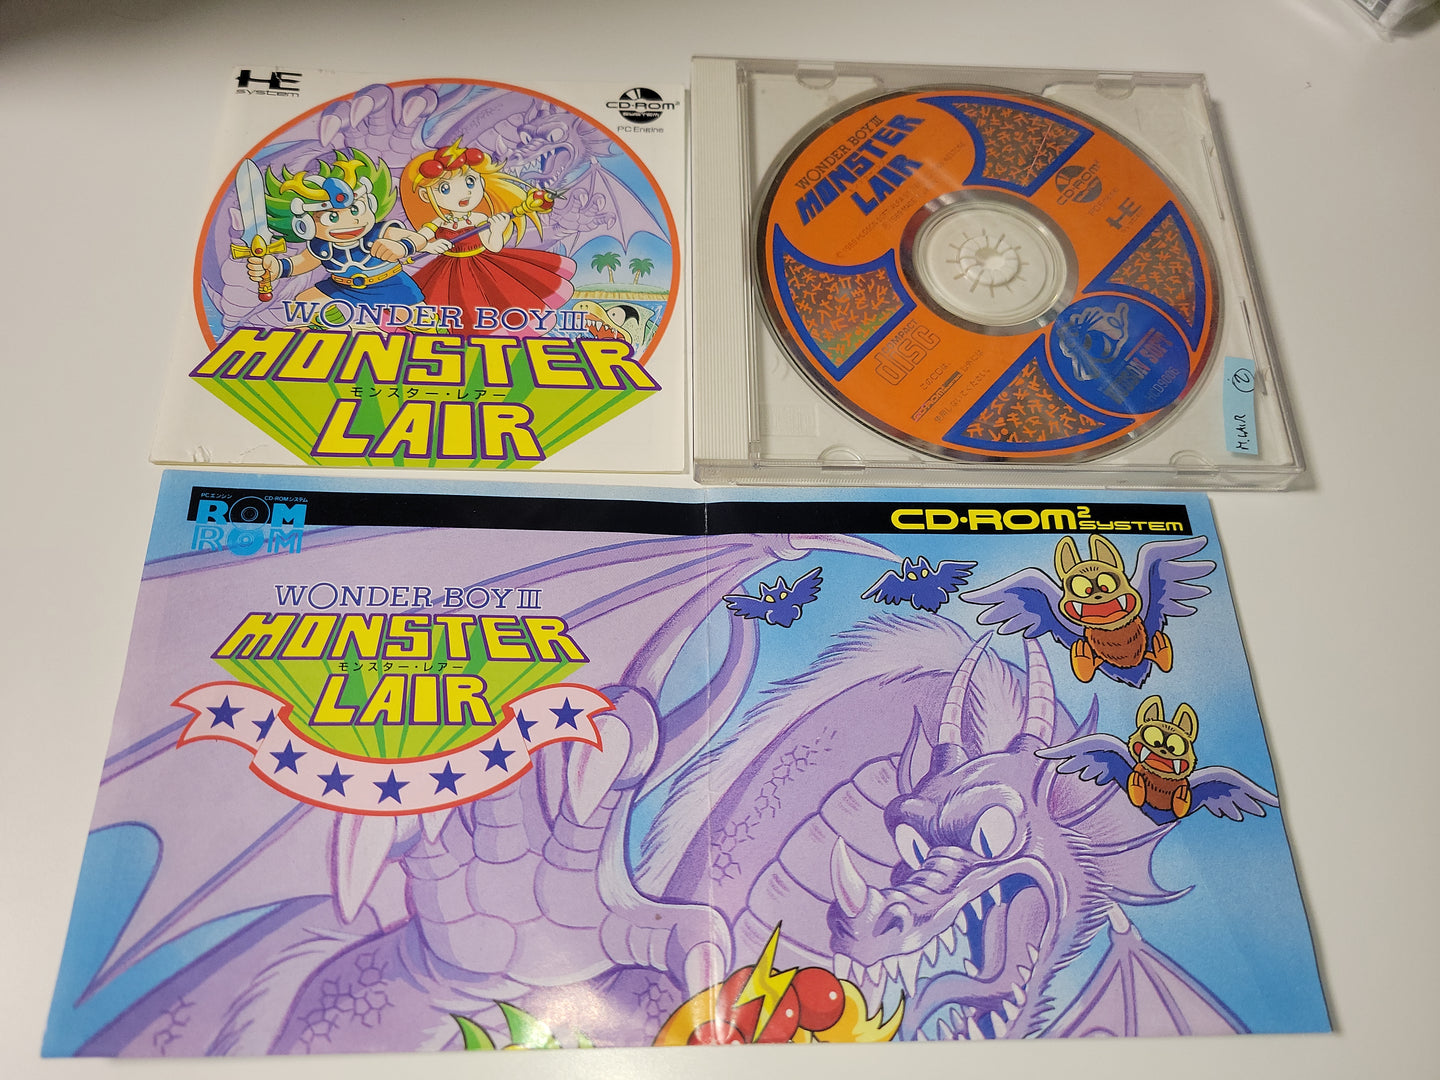 Wonder Boy III: Monster Lair - Nec Pce PcEngine